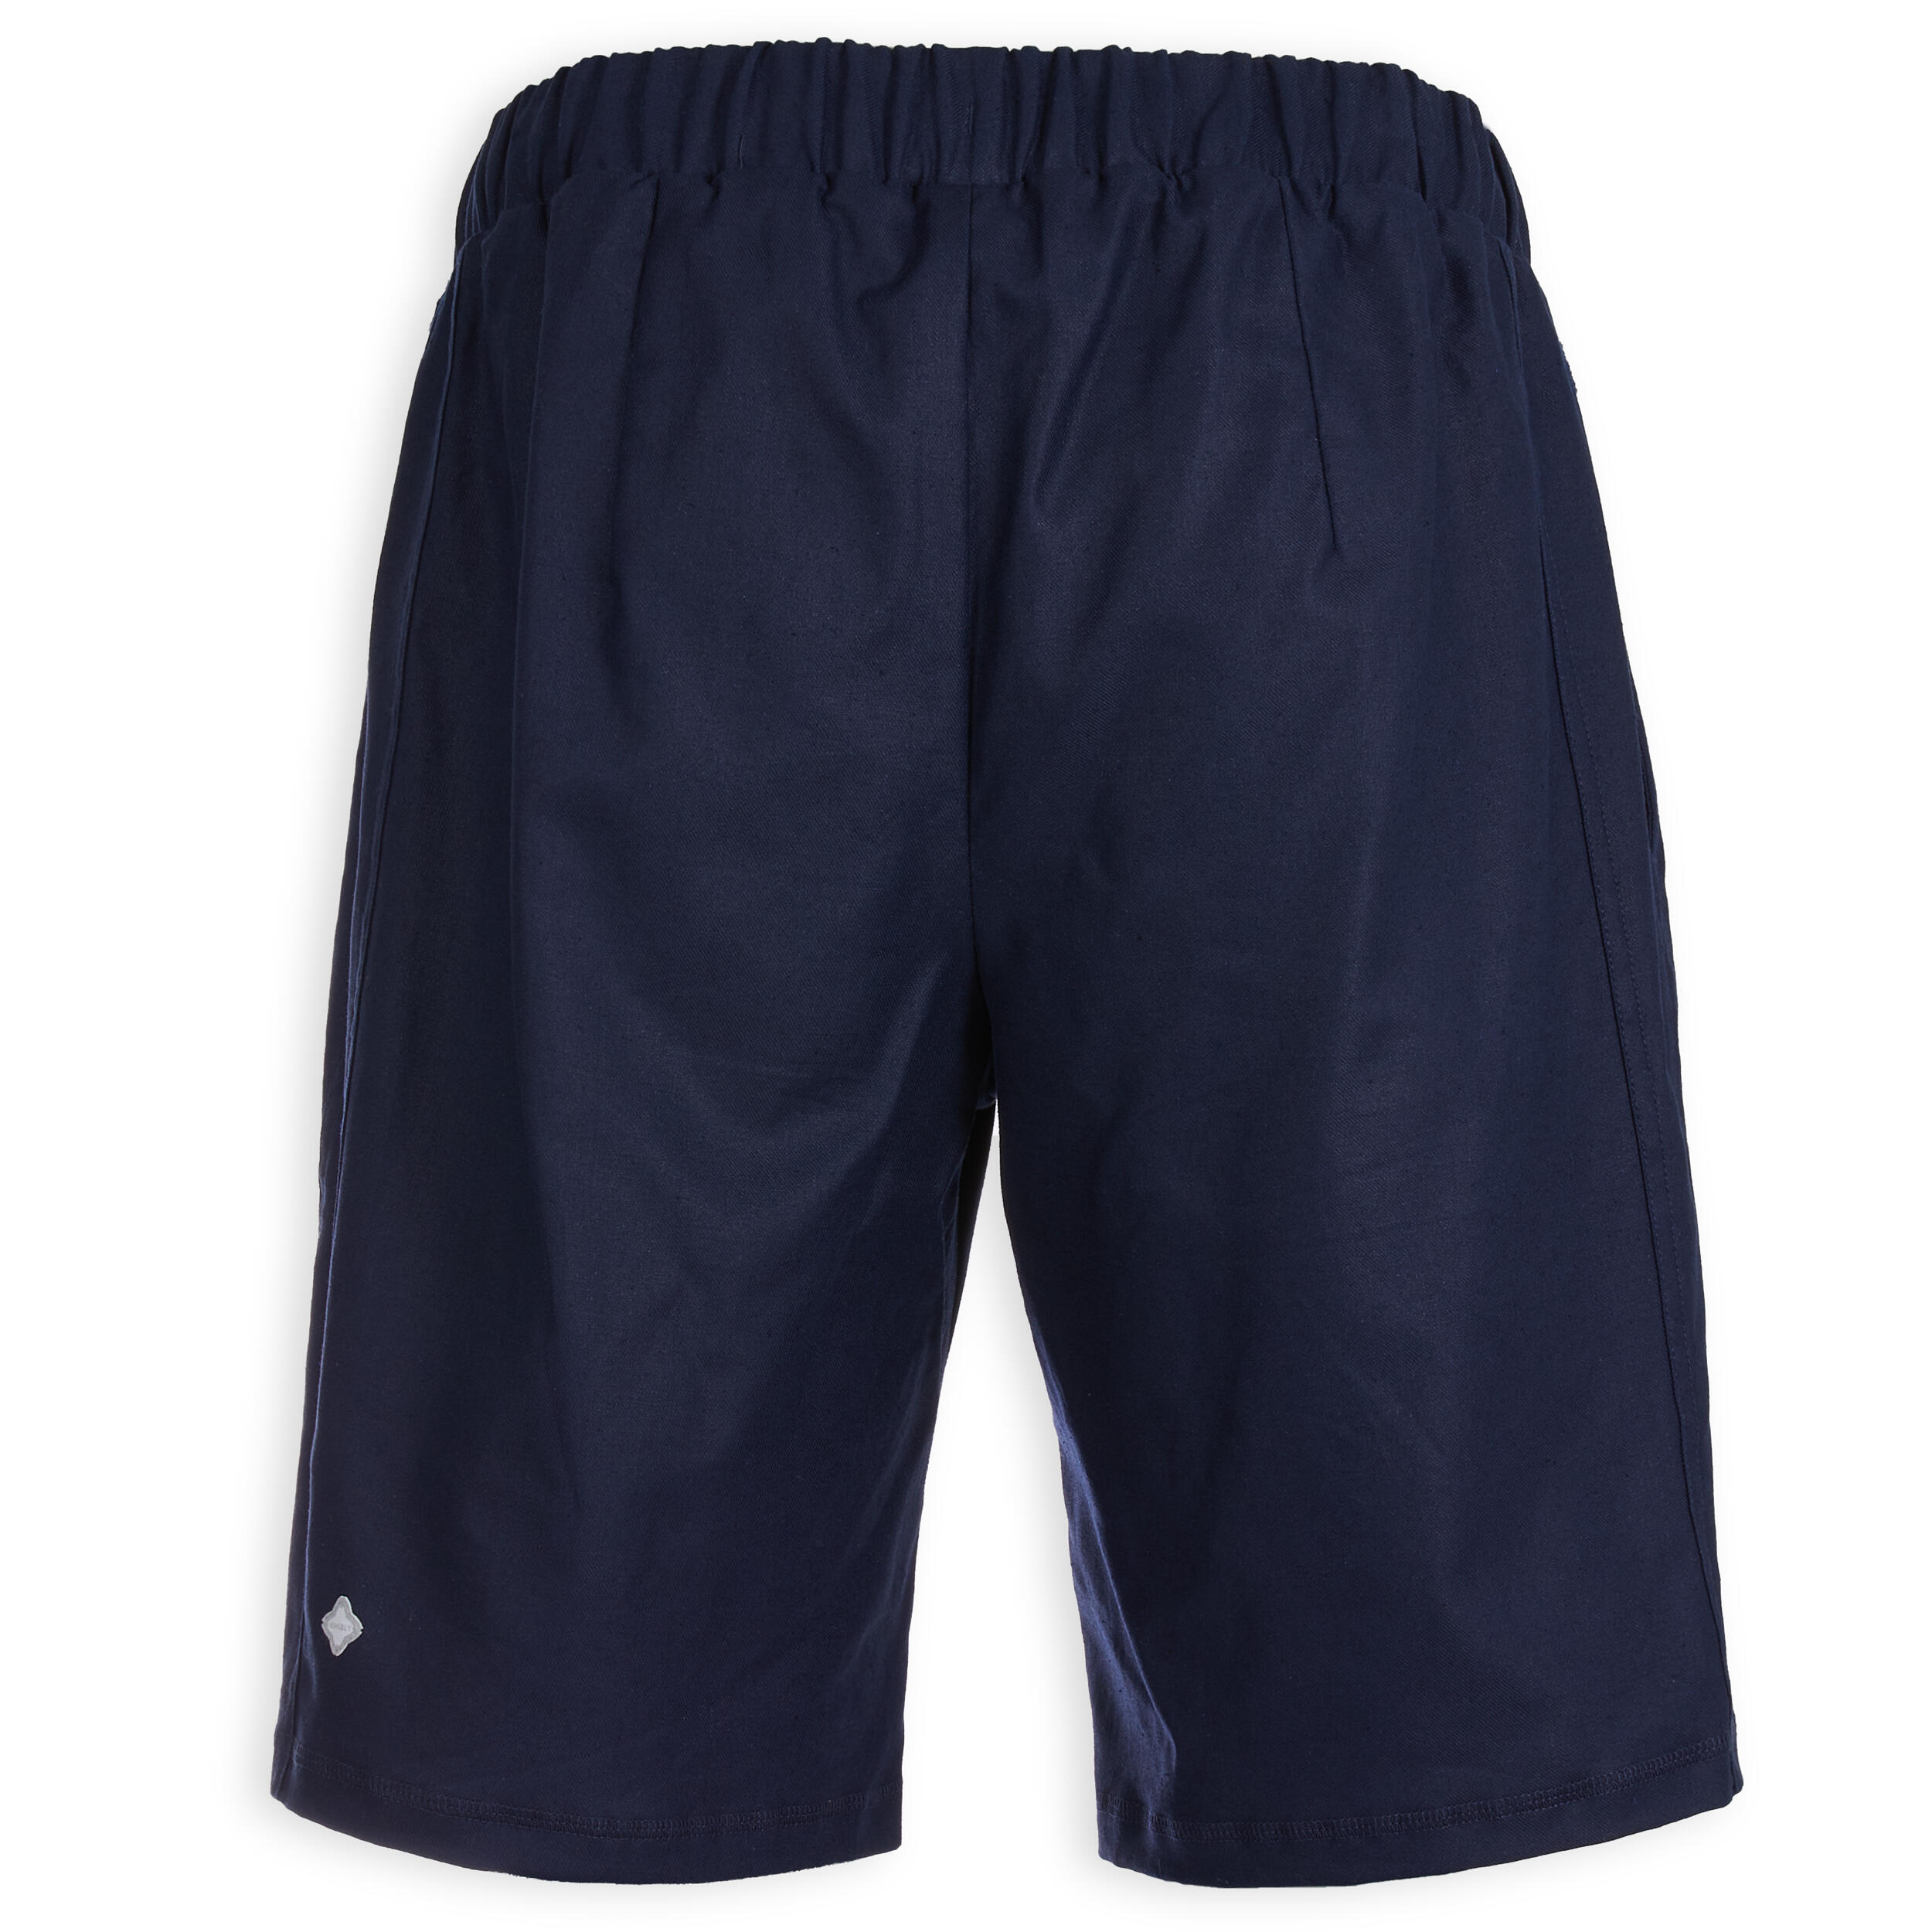 Men's Yoga Linen and Cotton Shorts - Indigo Blue 6/6